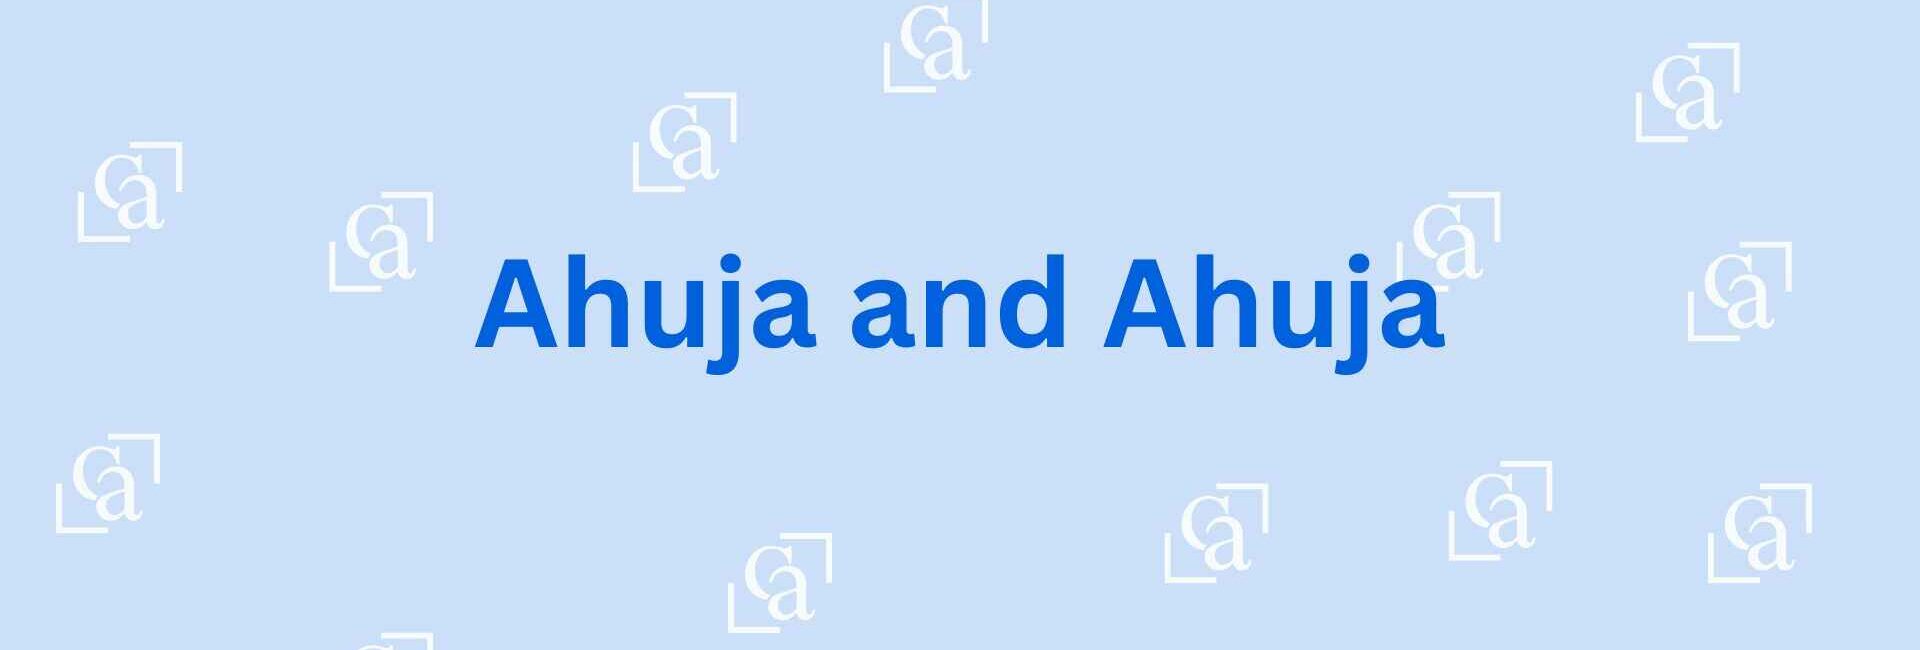 Ahuja and Ahuja - Chartered Accountant in Noida